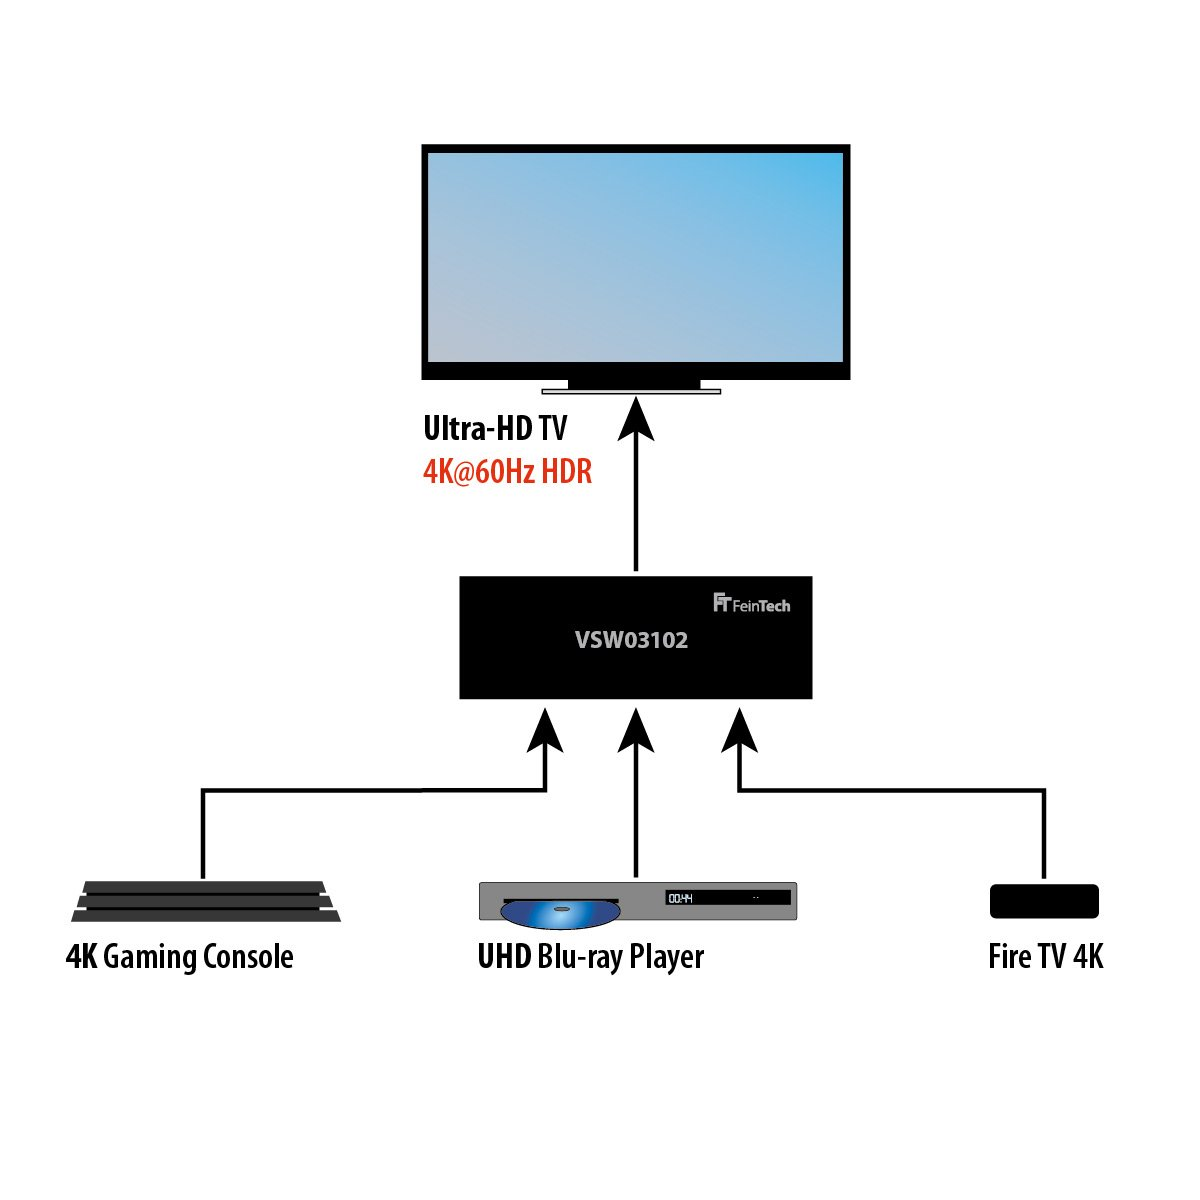 3x1 VSW03102 HDMI FEINTECH 2.0 Umschalter HDMI Switch